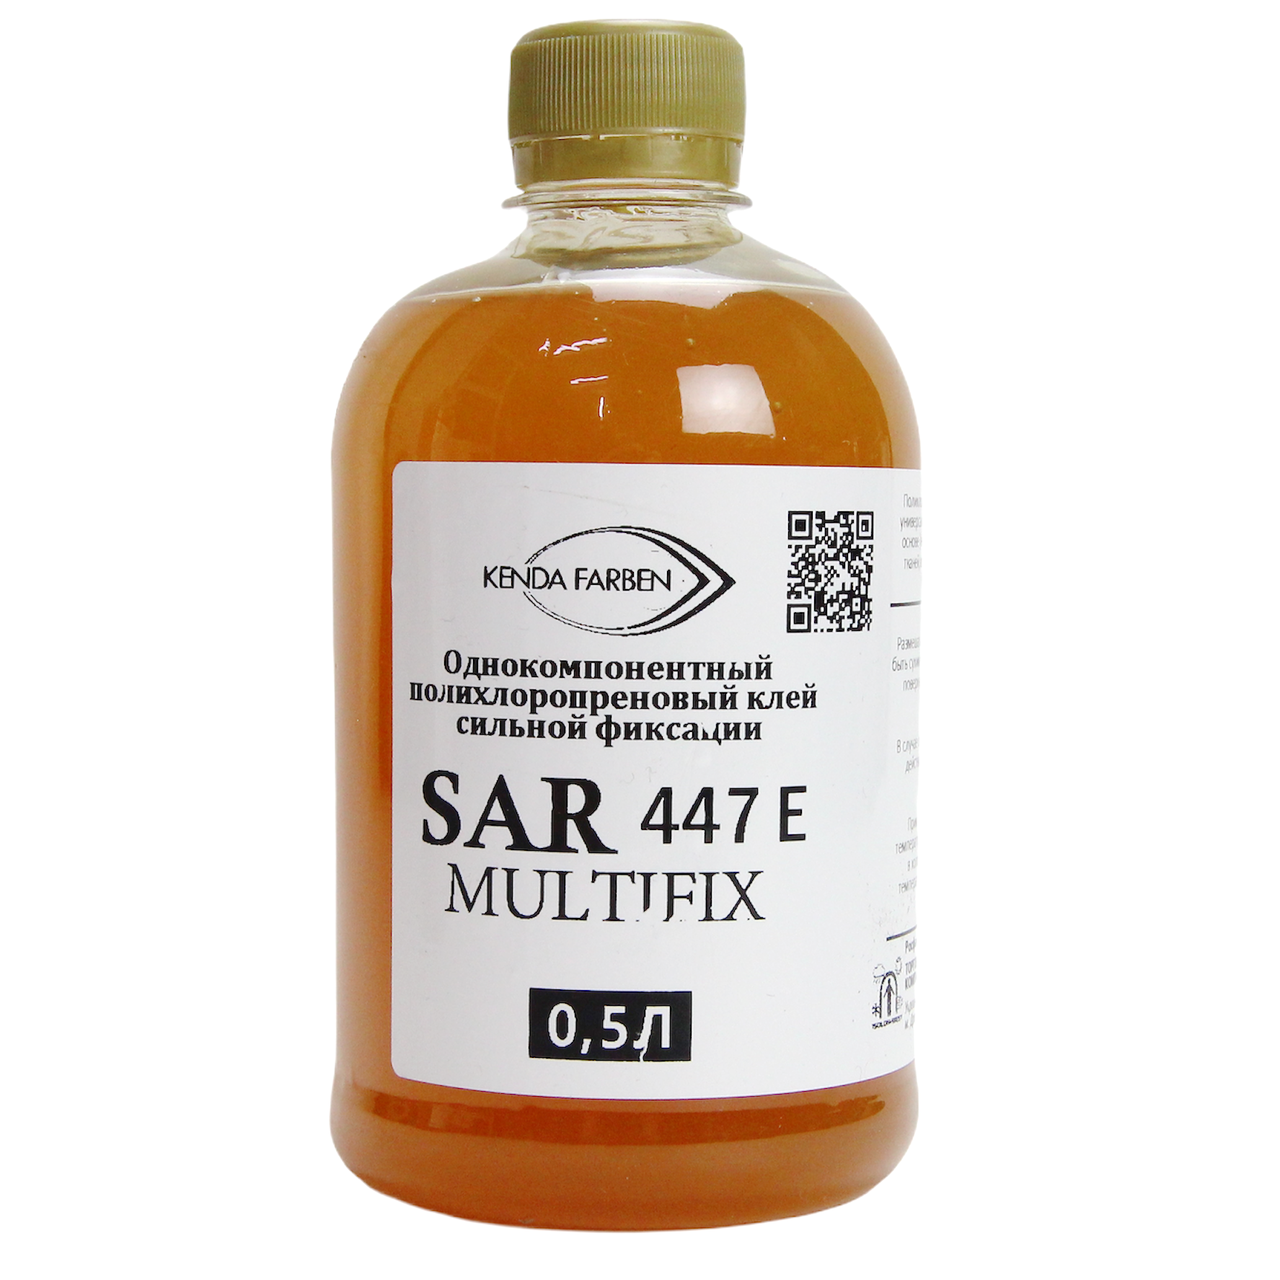 Клей універсальний Sar 447e (MULTIFIX) для шкірозамінника, шкіри, пвх (сильної фіксації) Італія анонс фото